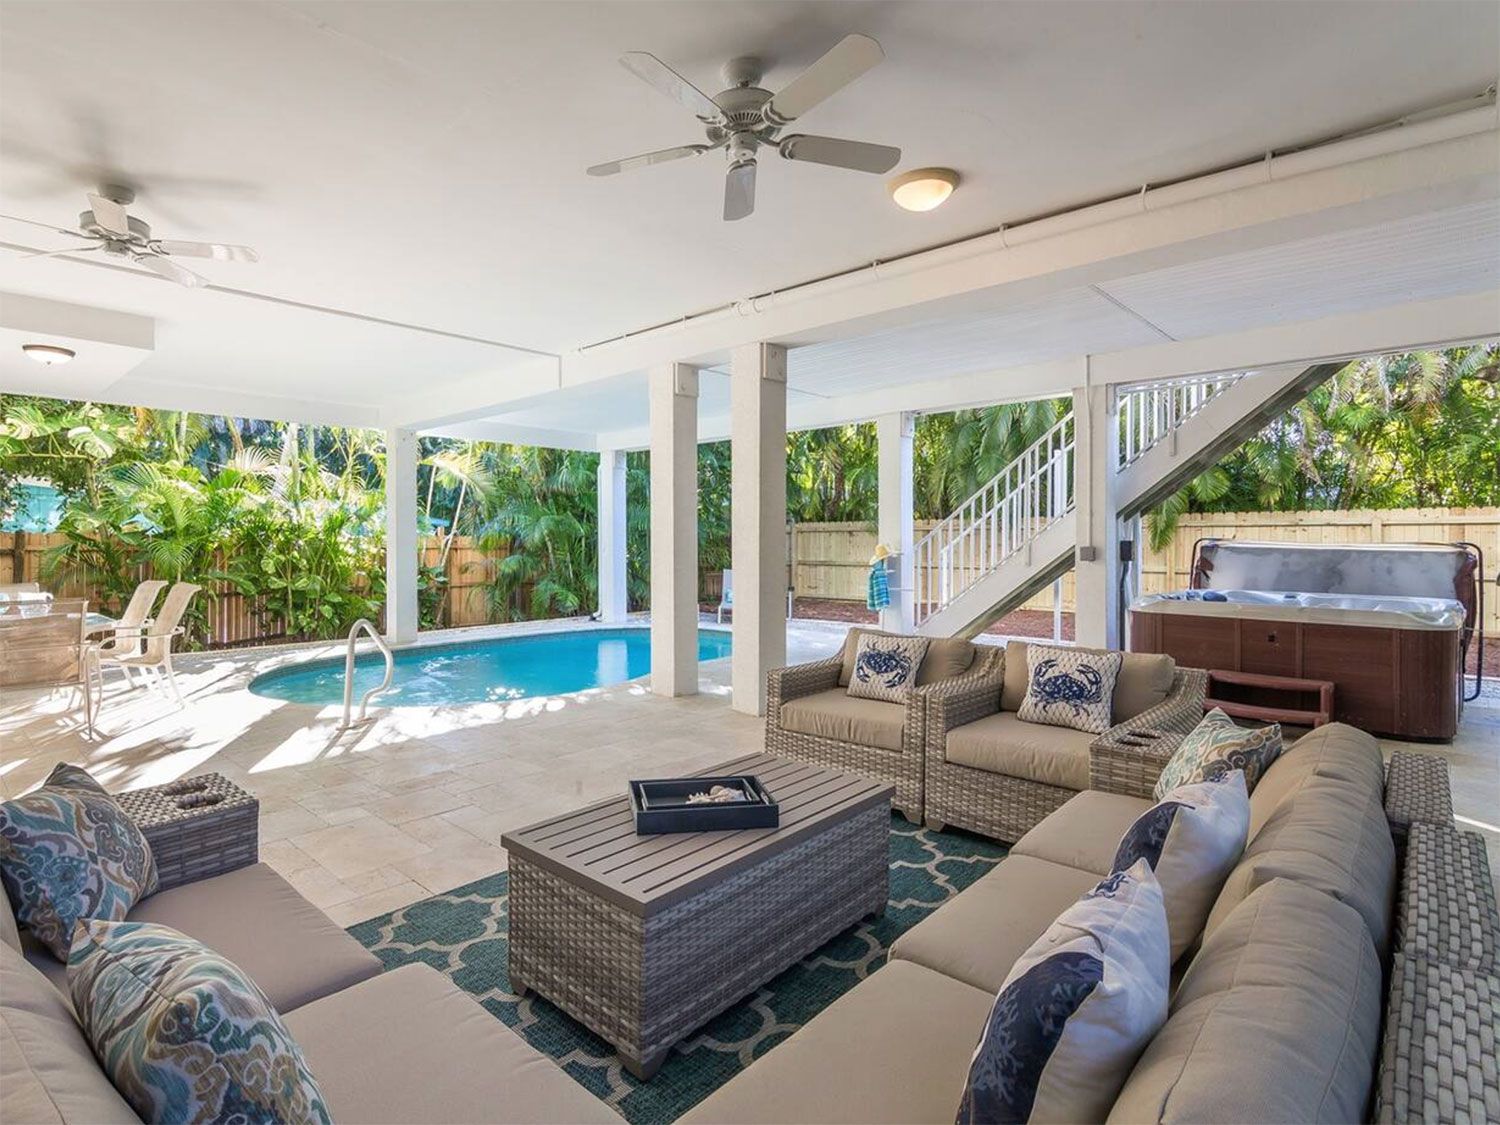 9 increíbles alquileres de Airbnb para tus próximas vacaciones en Florida 4